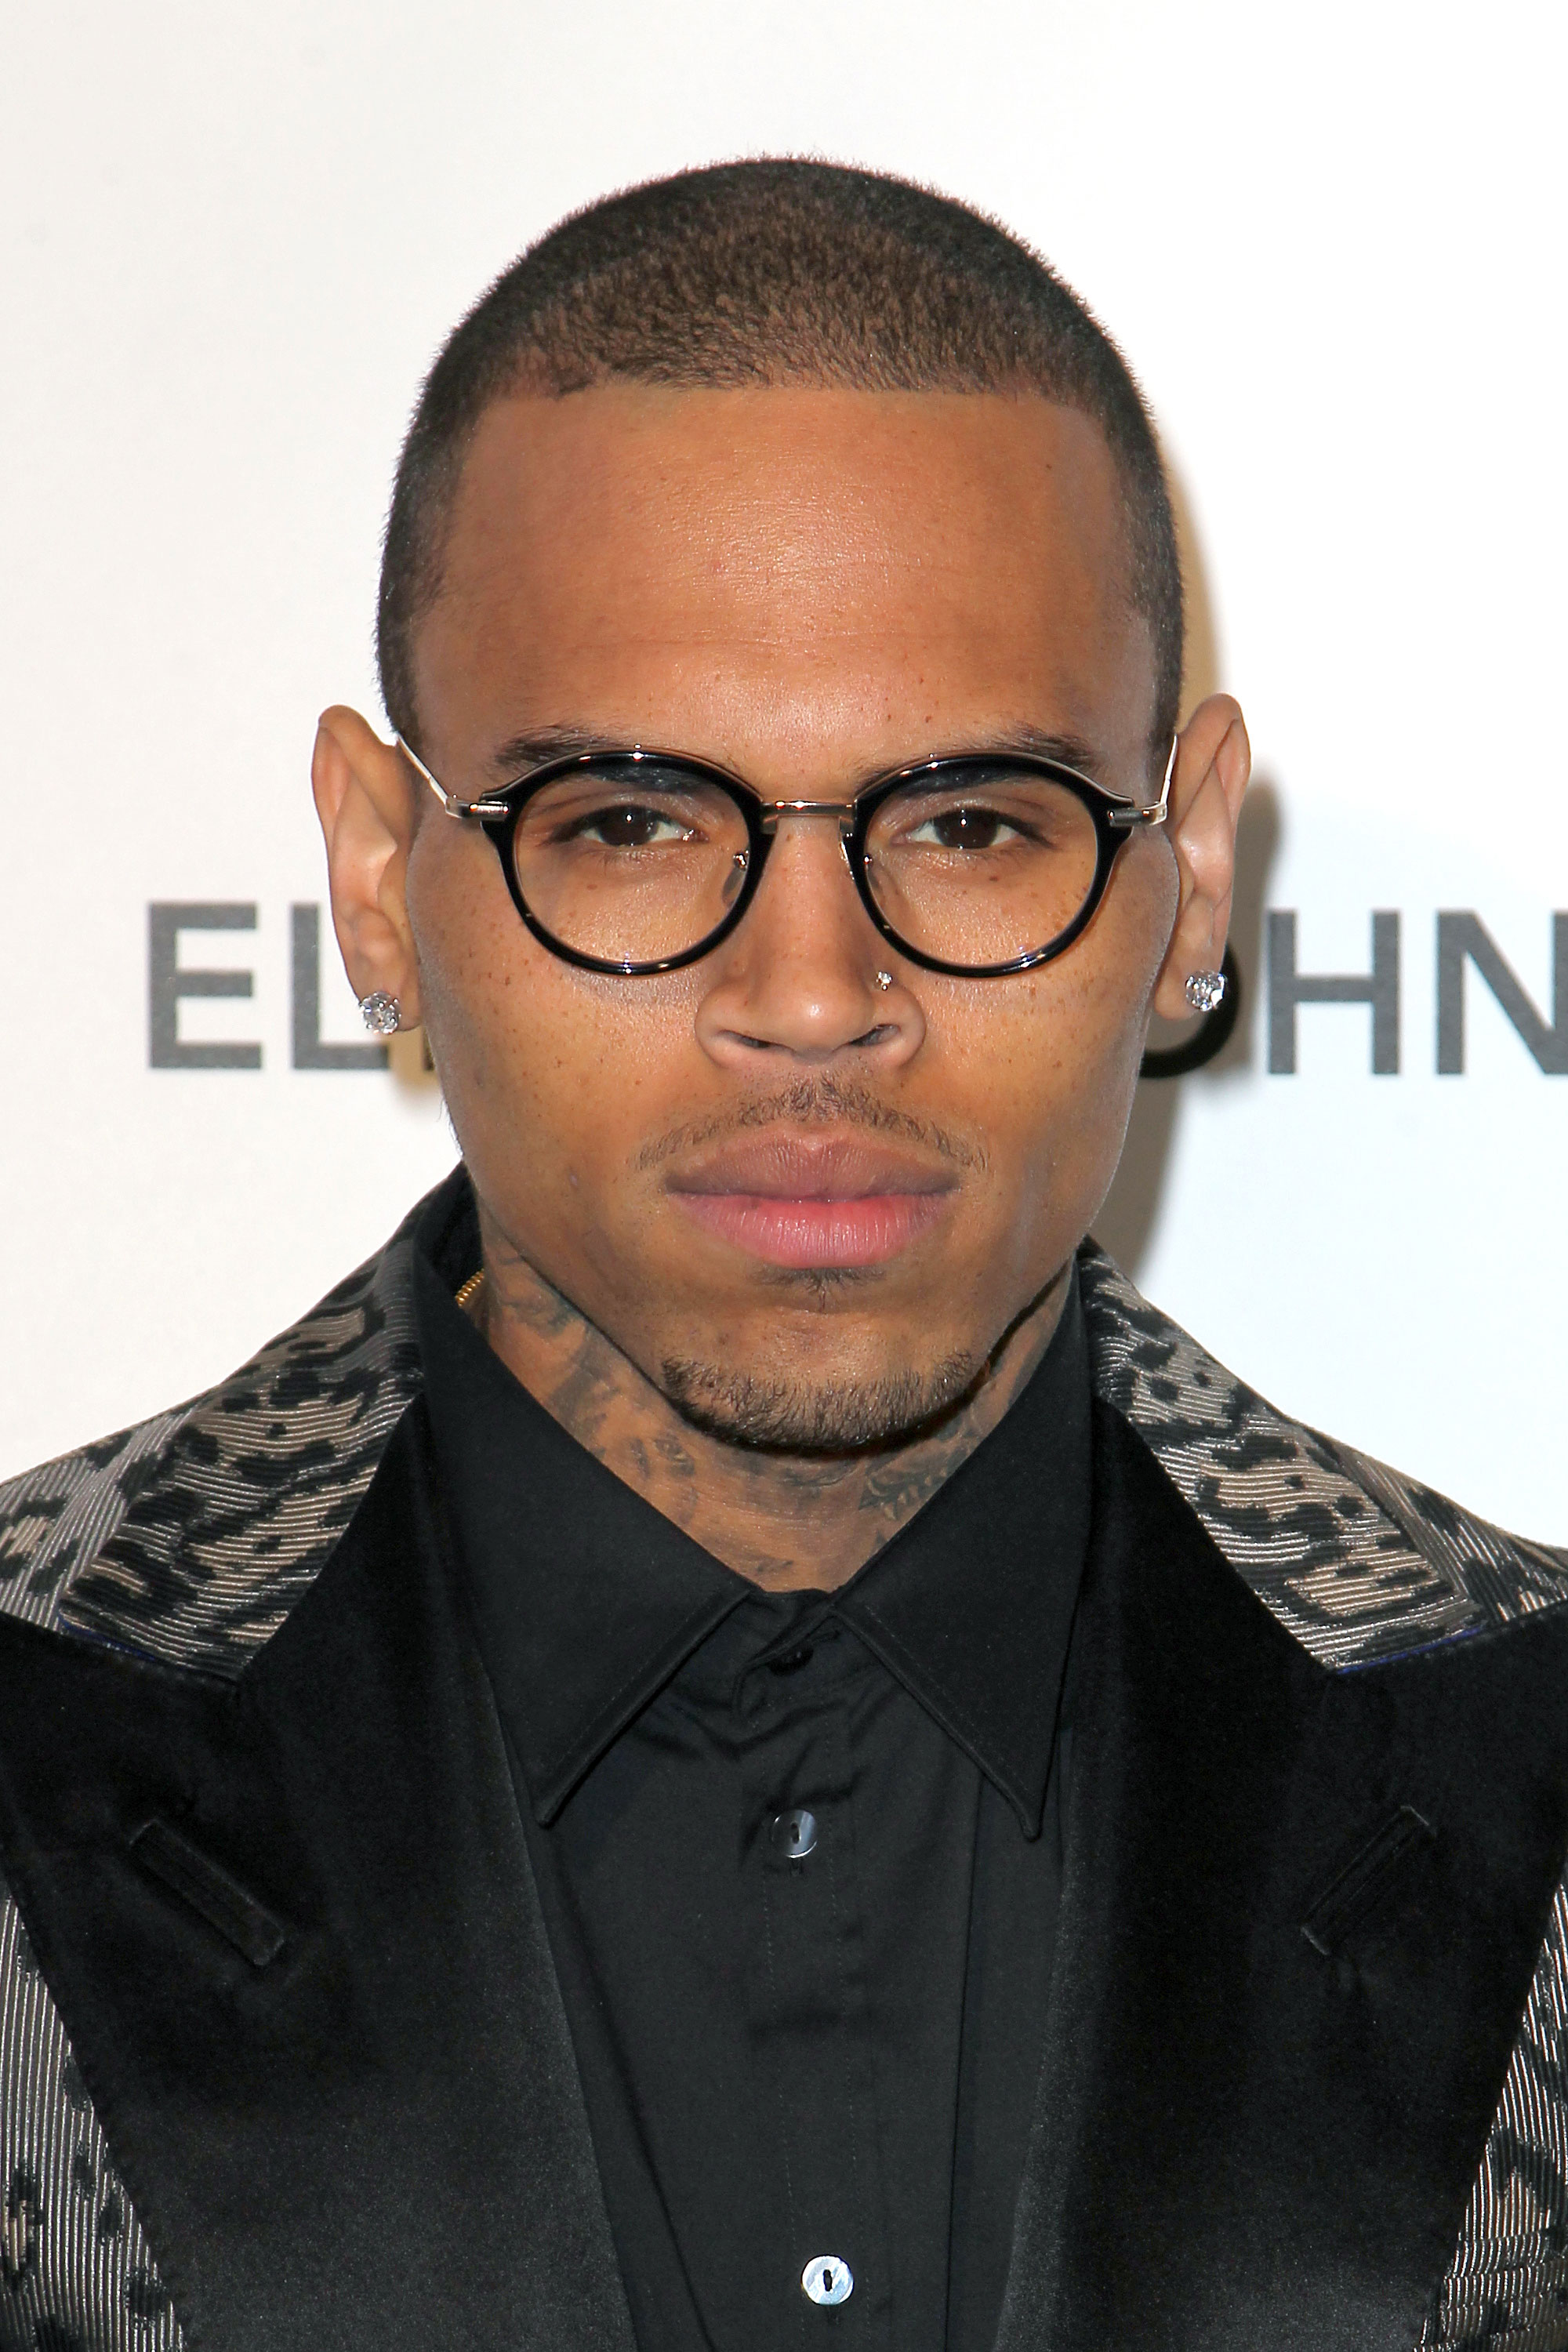 Chris Brown bought Rihanna $65k earrings" links.